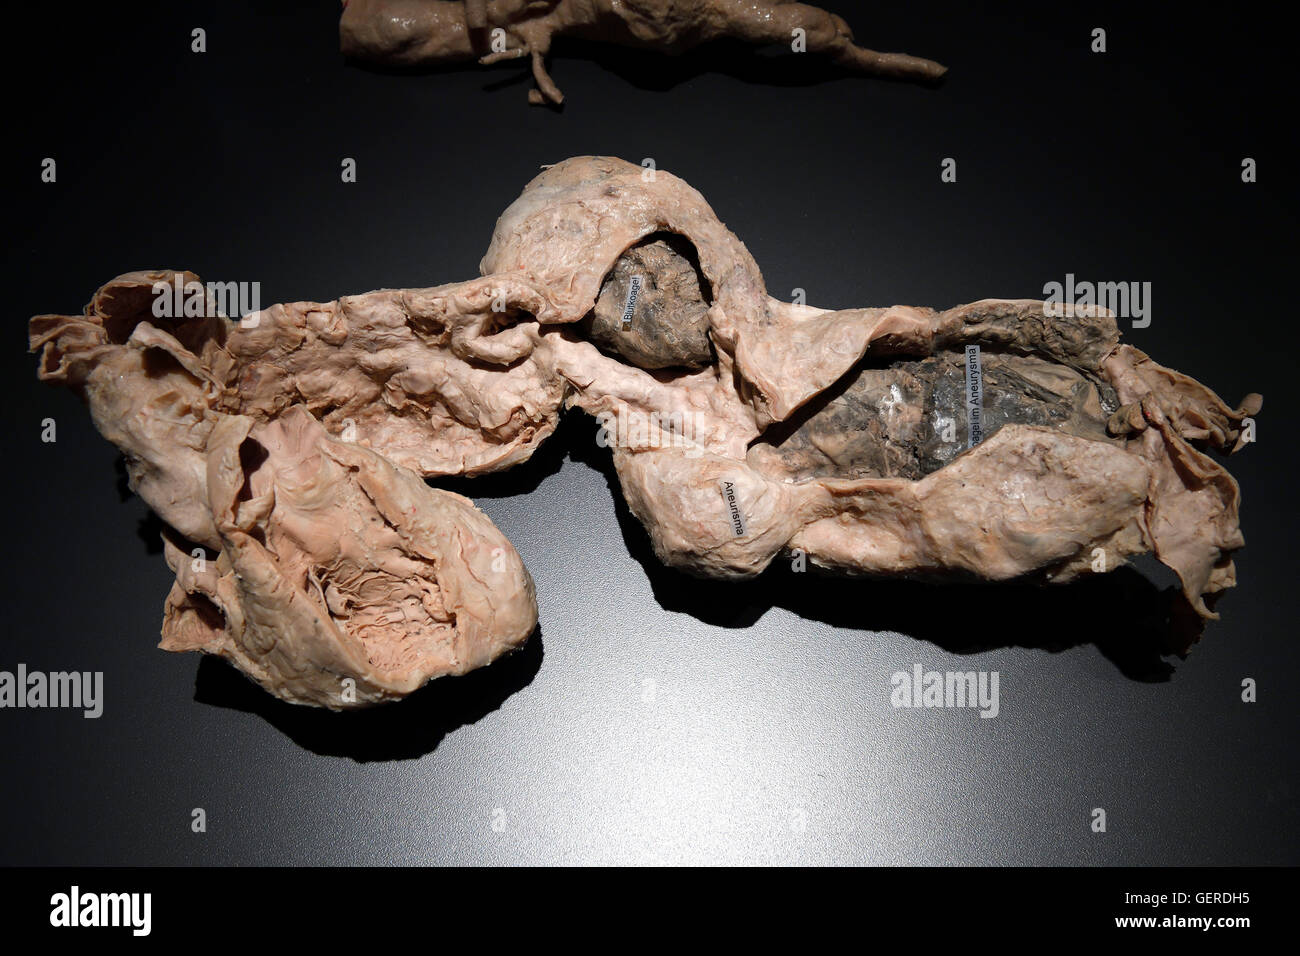 Plastinat, Anourysma einer aorta, il dottor Gunter von Hagens, MeMu, Menschen Museum di Berlino, Deutschland Foto Stock